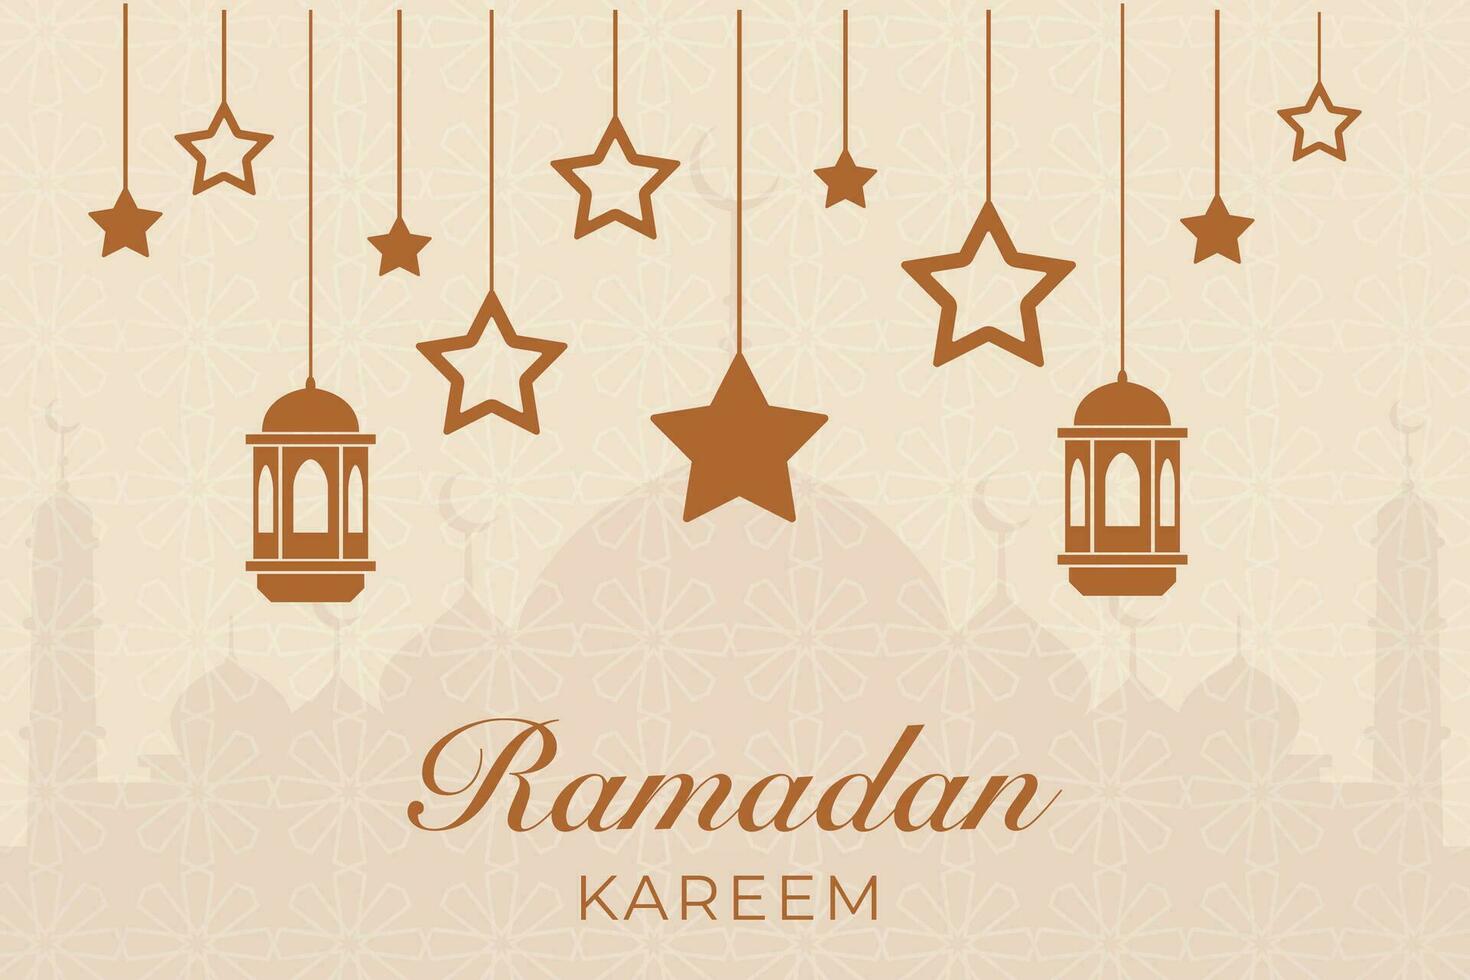 Ramadan kareem Gruß Karte mit Sterne und Laternen Vektor Illustration